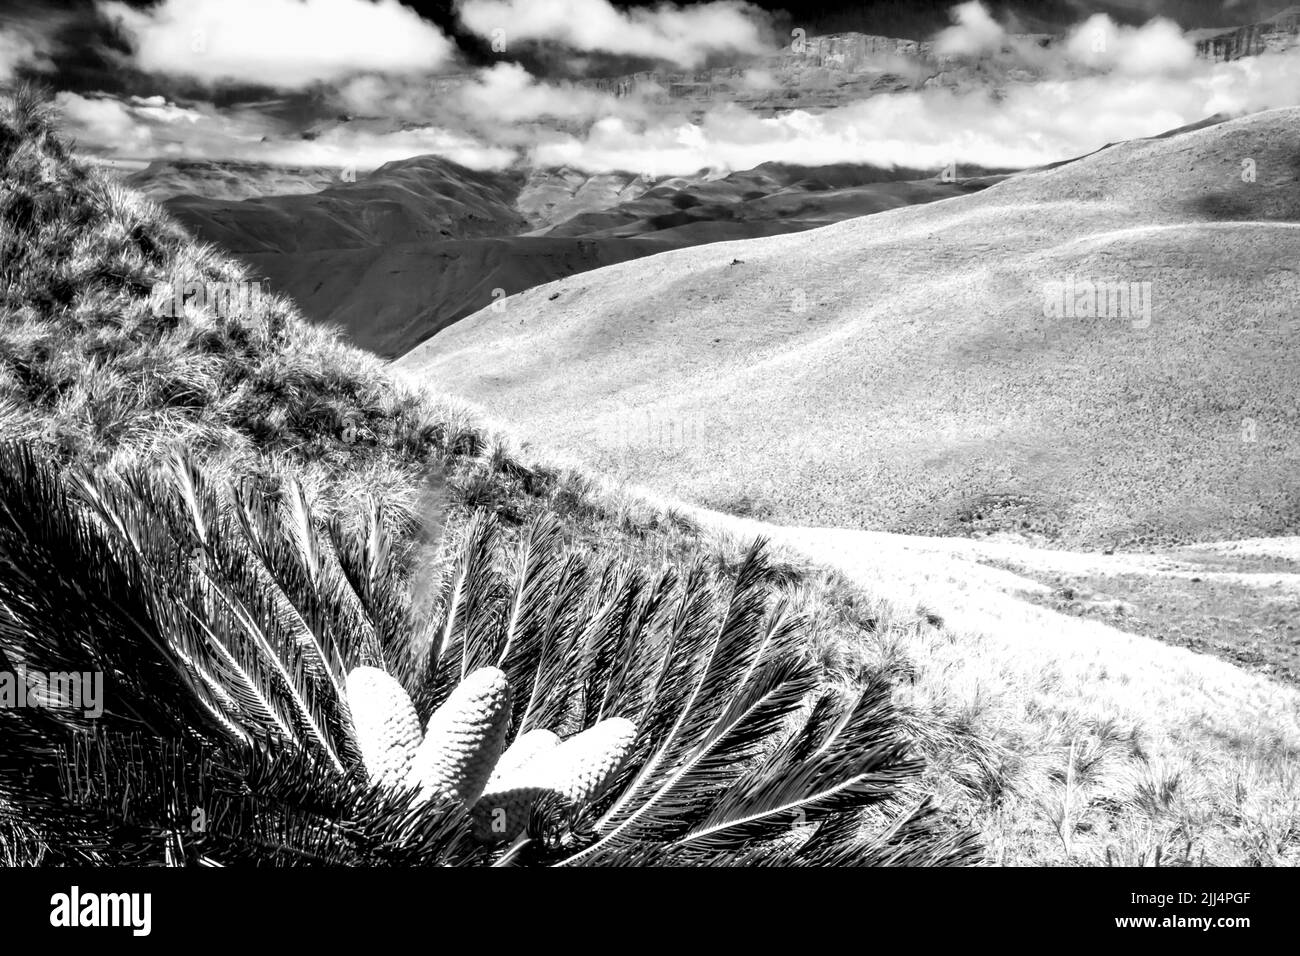 La hierba afro-alpina de gran altitud cubría las laderas de las montañas Drakensberg de Sudáfrica en blanco y negro, con una Cicada Drakensberg Foto de stock